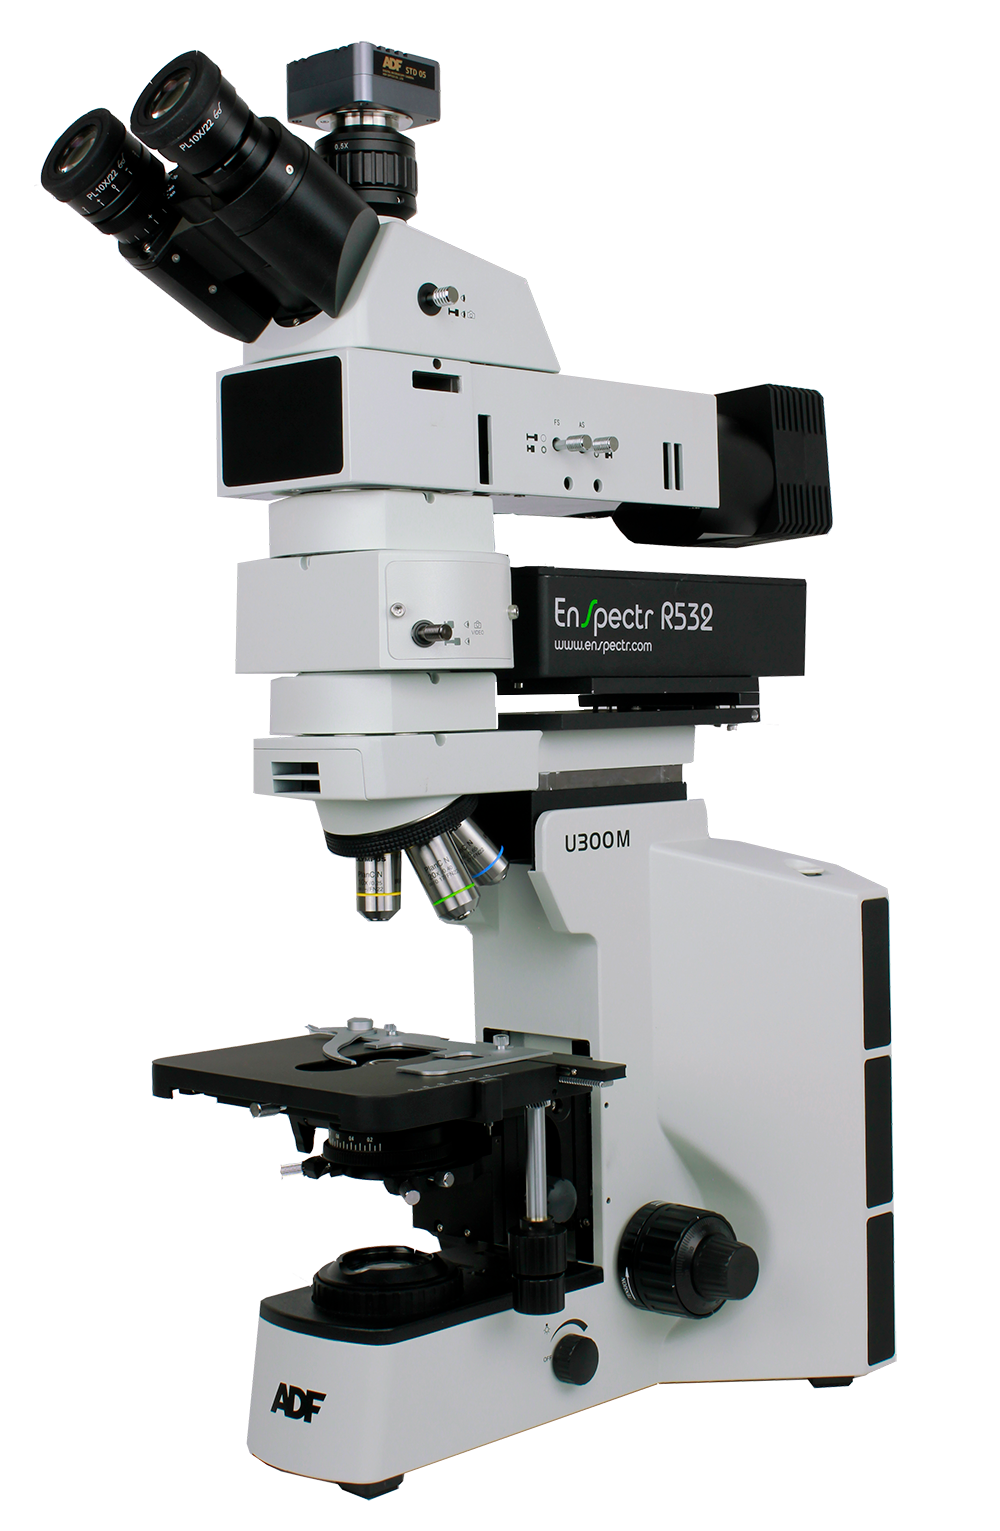 Microscopio Raman М532 del fabricante Spectr-M